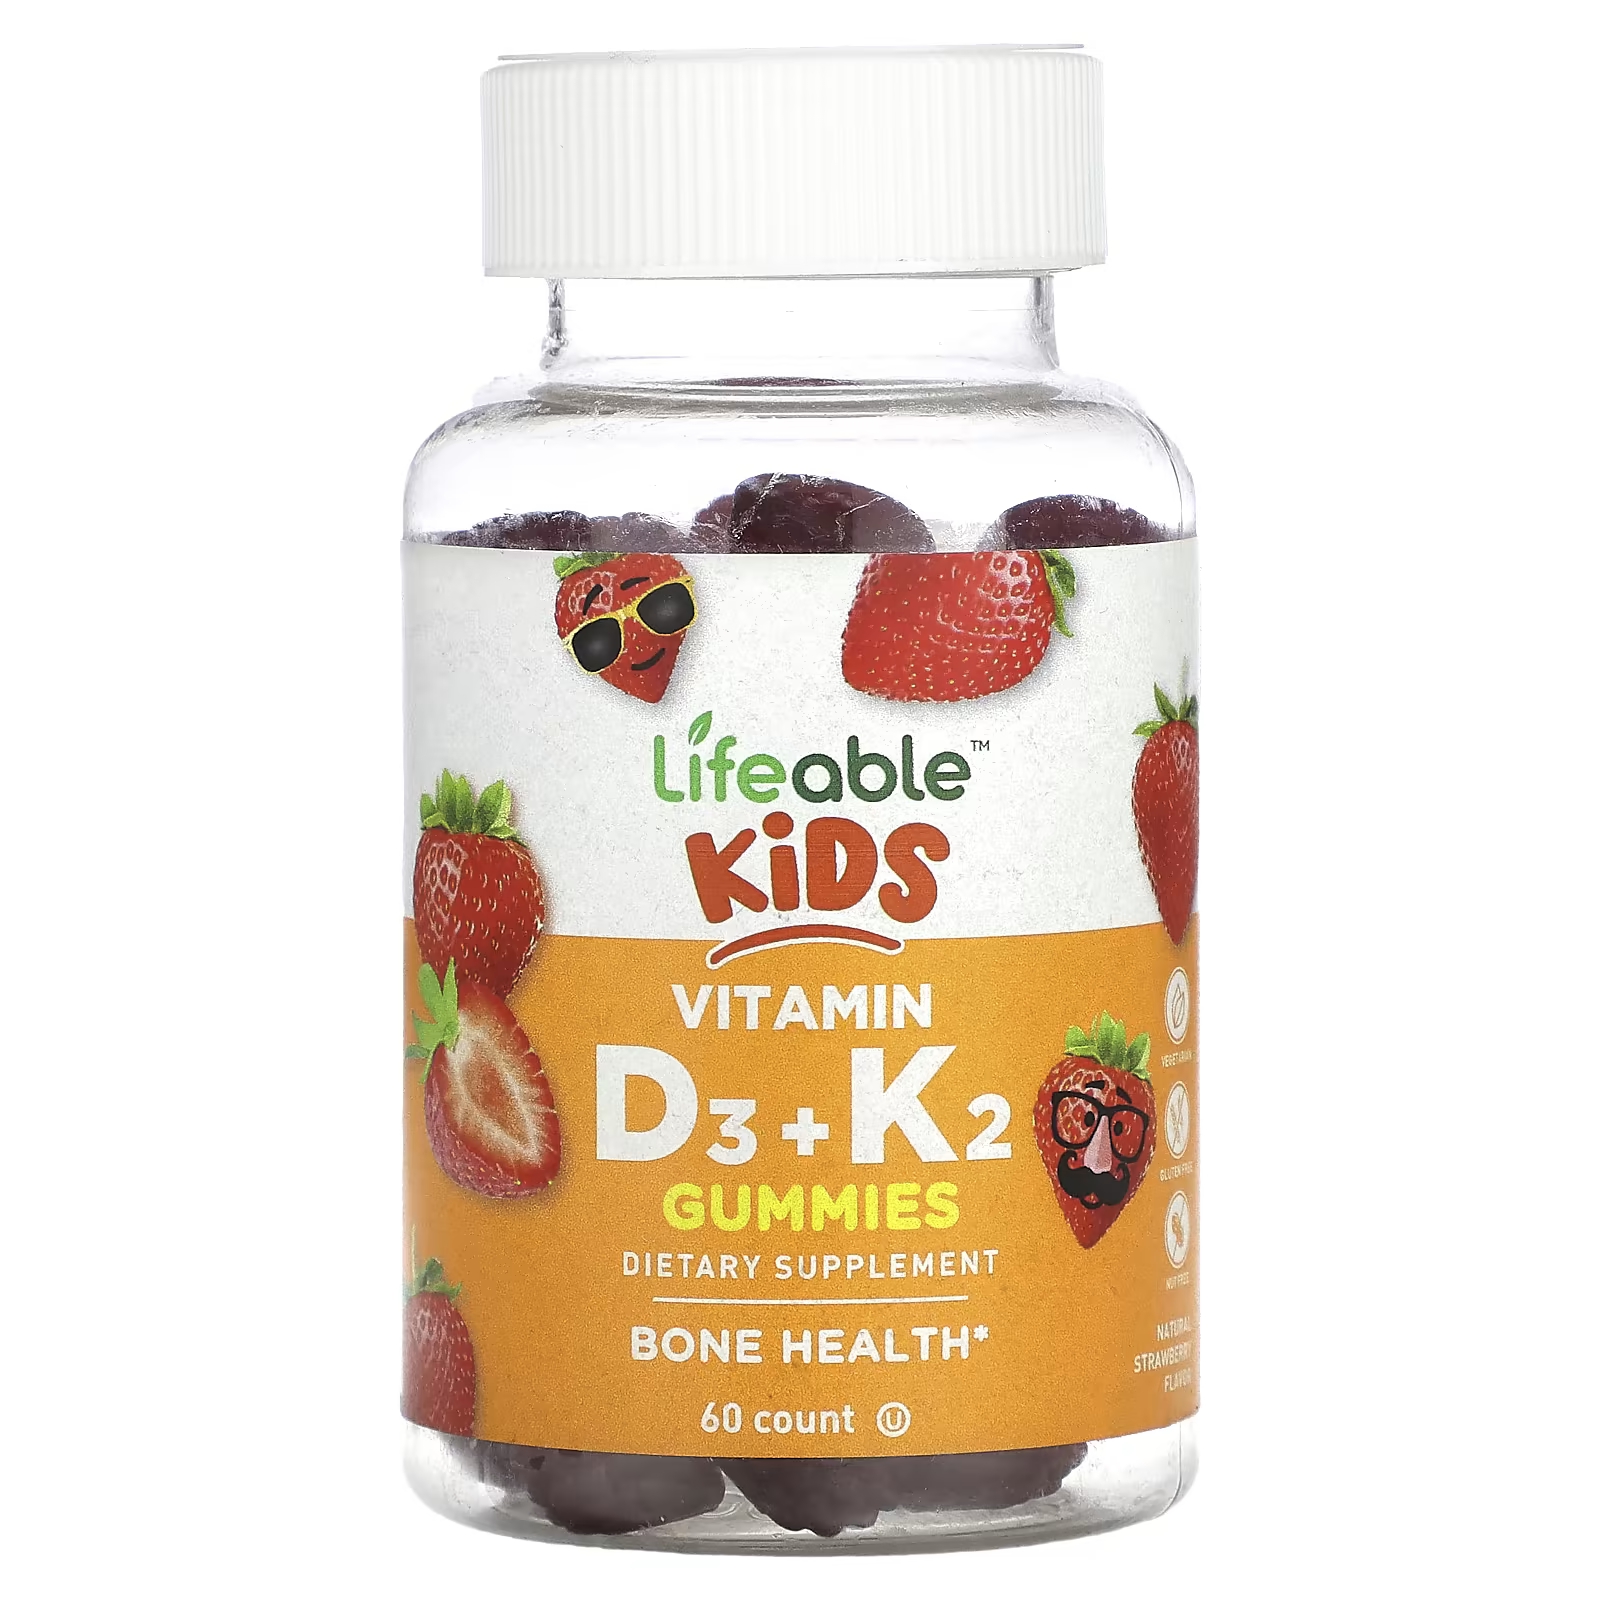 Пищевая добавка Lifeable Kids с витамином D3 + K2, натуральная клубника, 60 жевательных конфет пищевая добавка с биотином lifeable натуральная малина 60 жевательных конфет